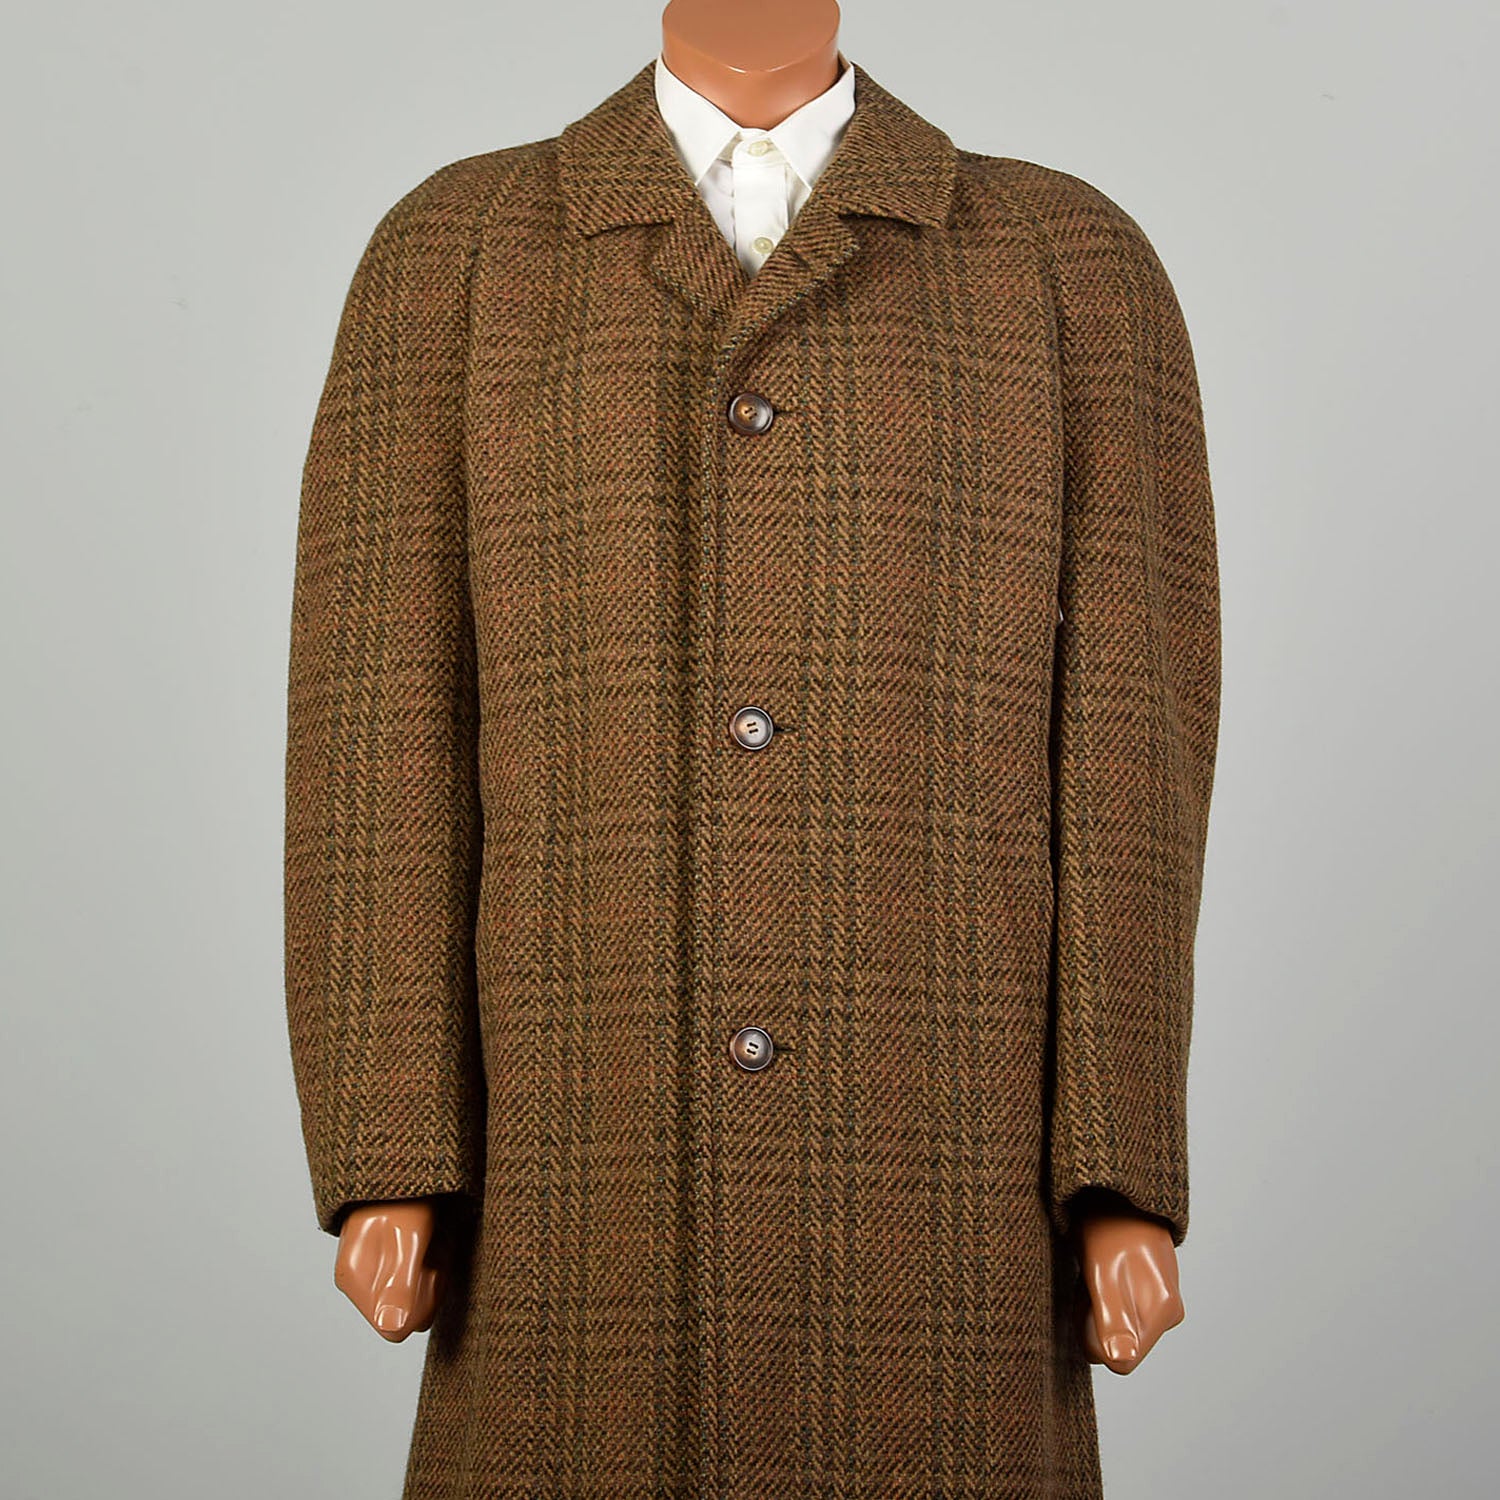 XL 1970s Jacket Brown Plaid Herringbone Wool Tweed Winter Car Coat